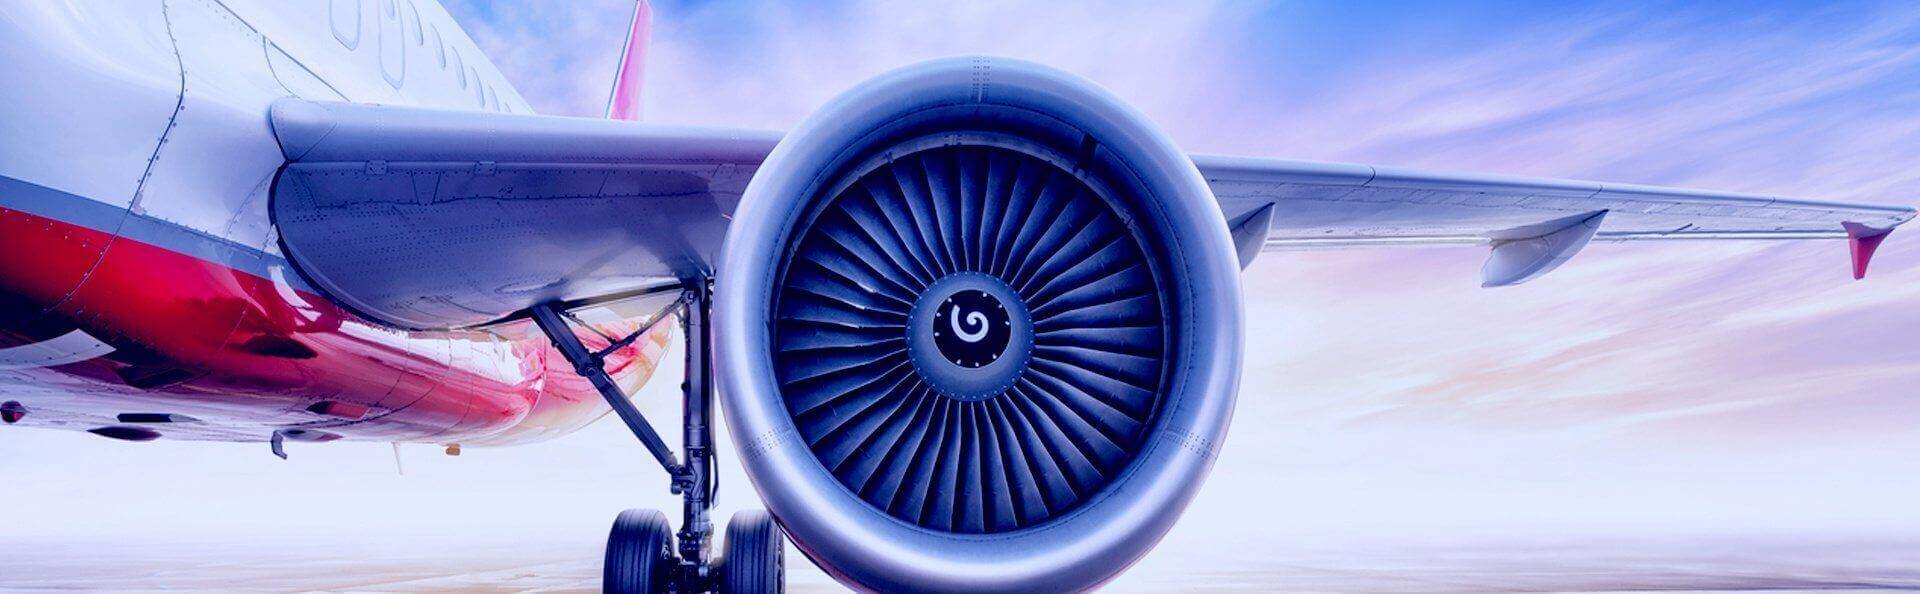 aircraft parts